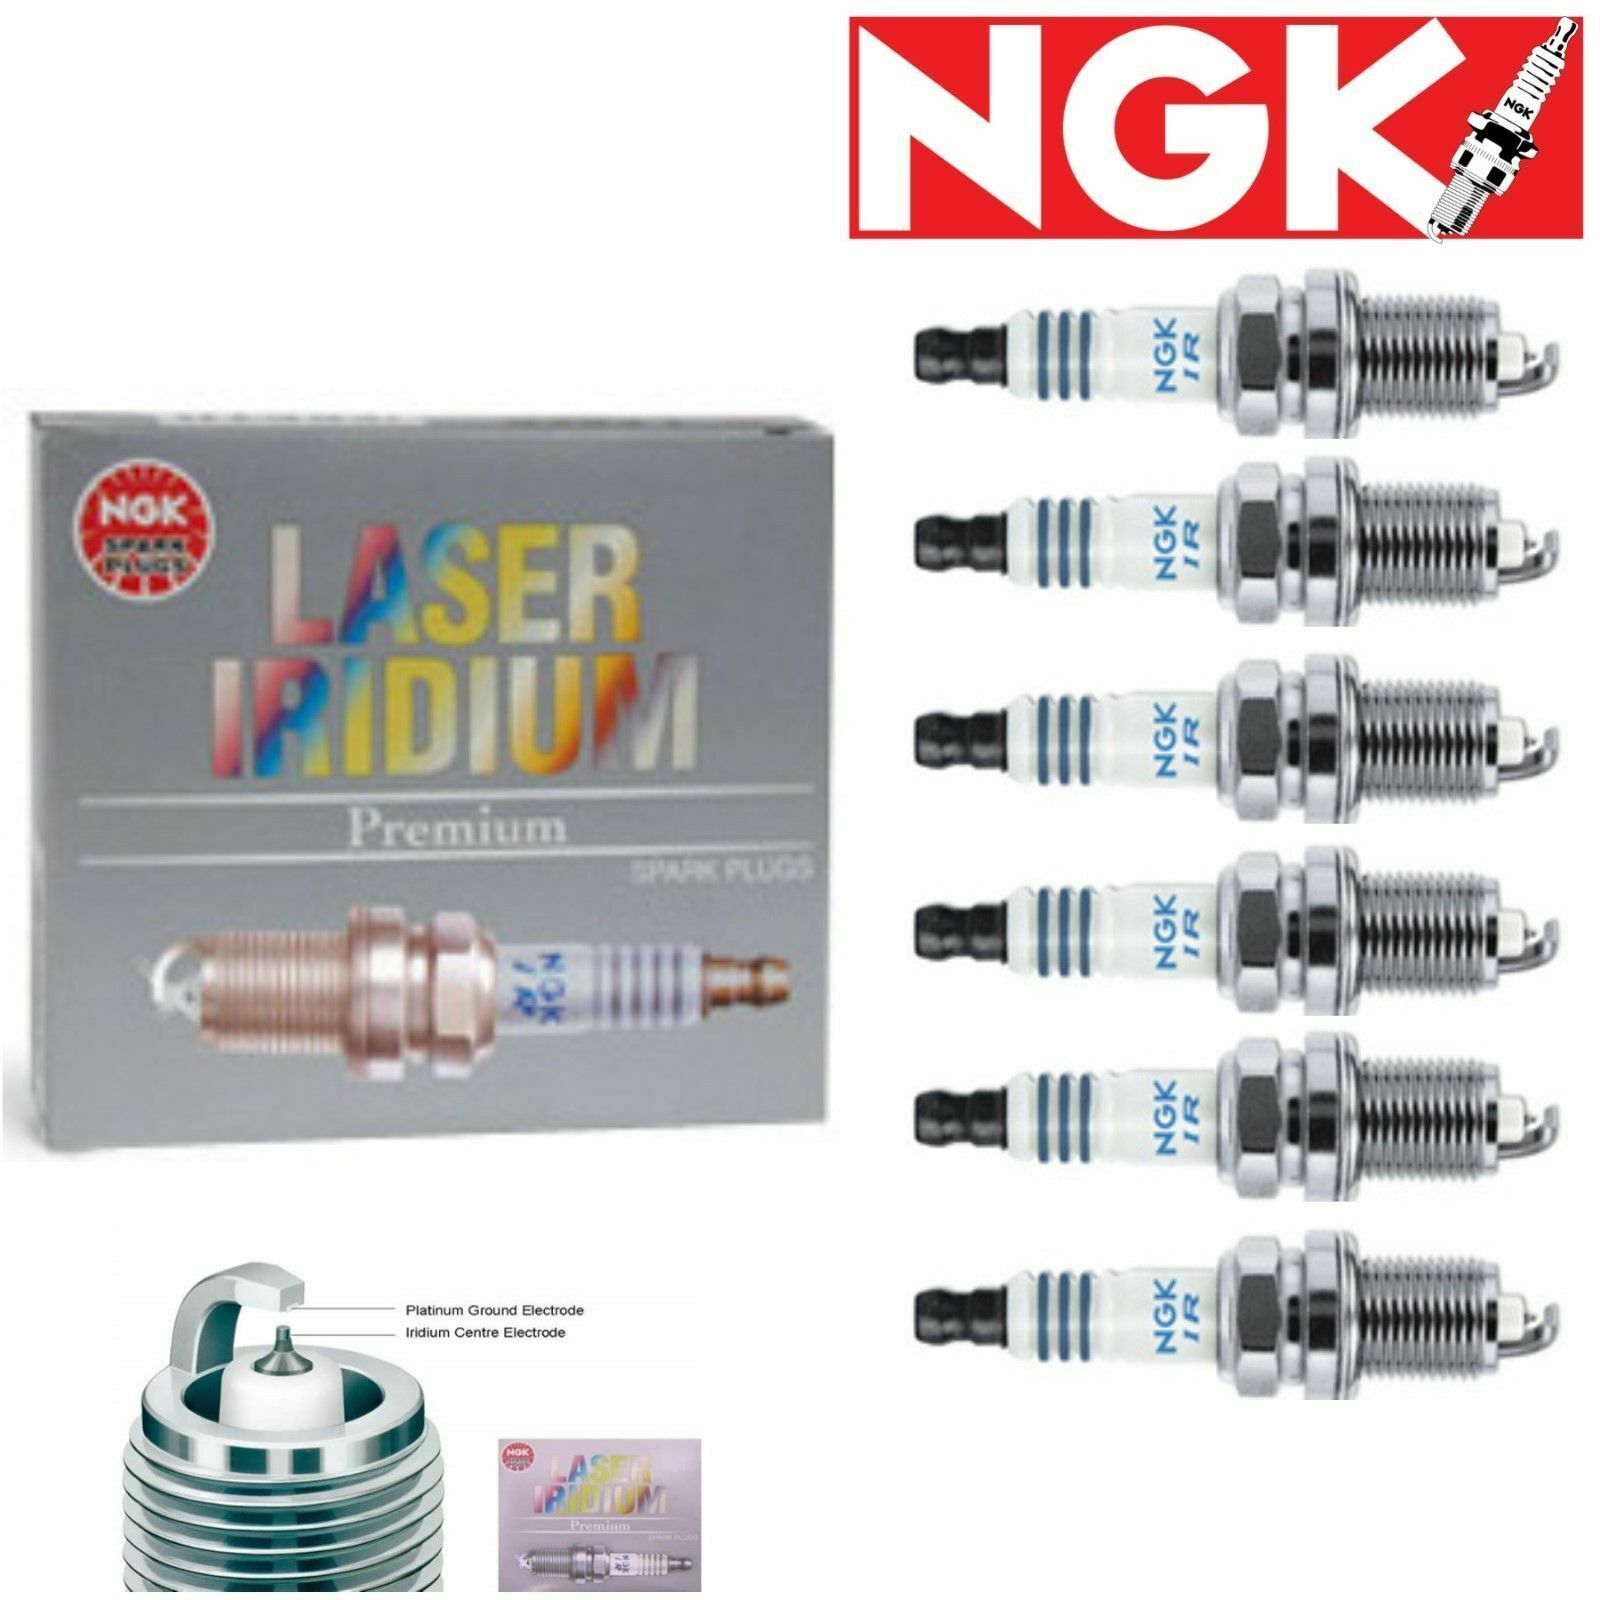 6 x Spark Plugs NGK Laser Iridium for2009-2014 for Nissan Murano 3.5L V6 Kit